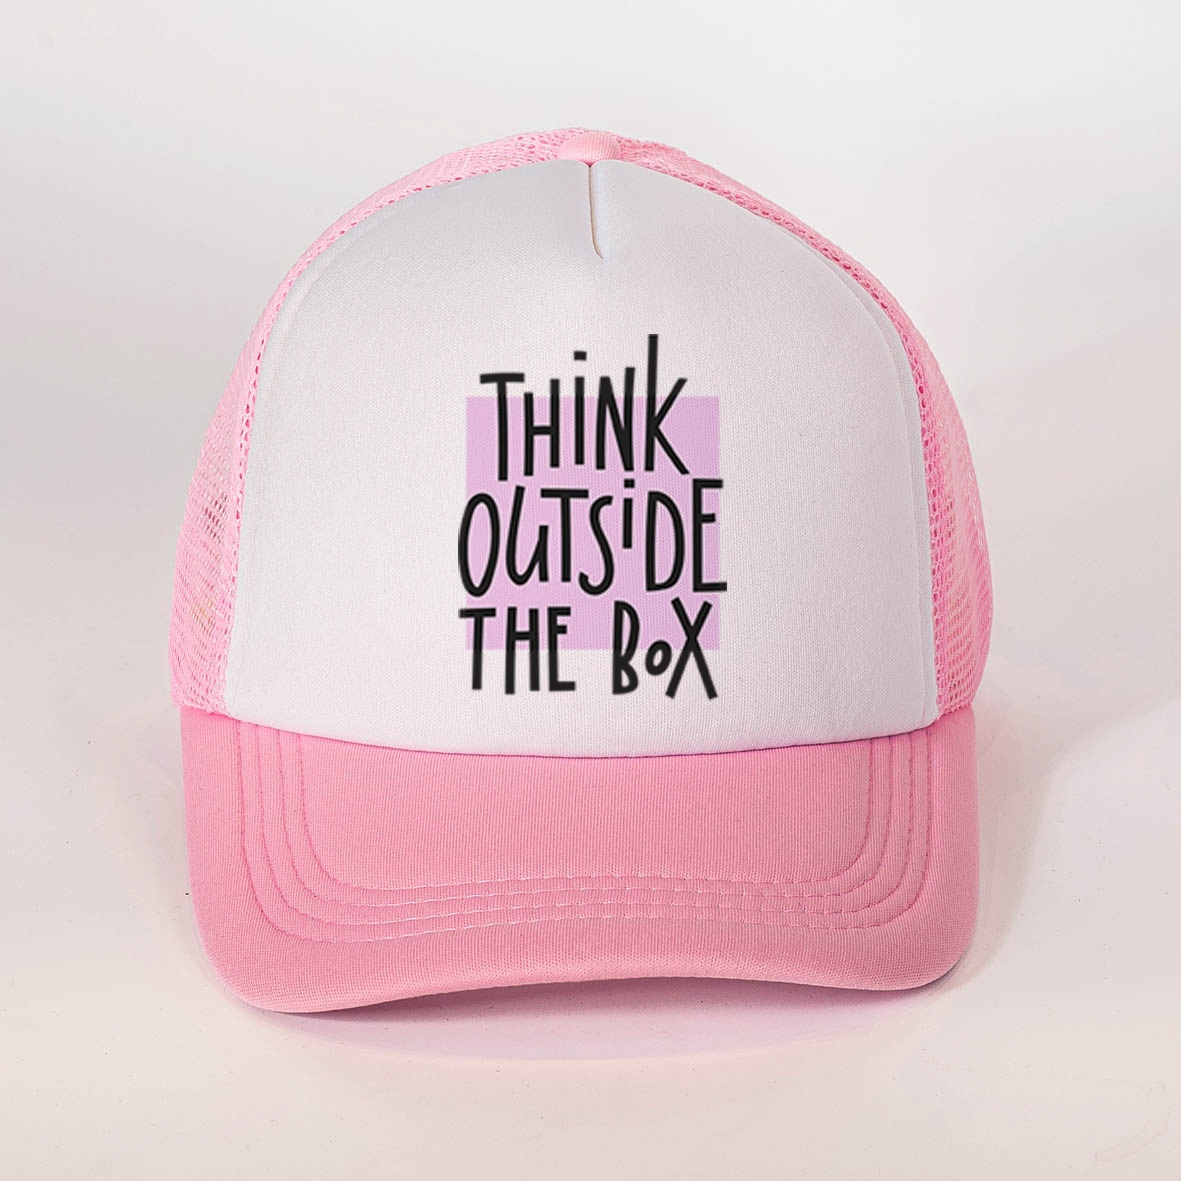 Outside the box - Καπέλα